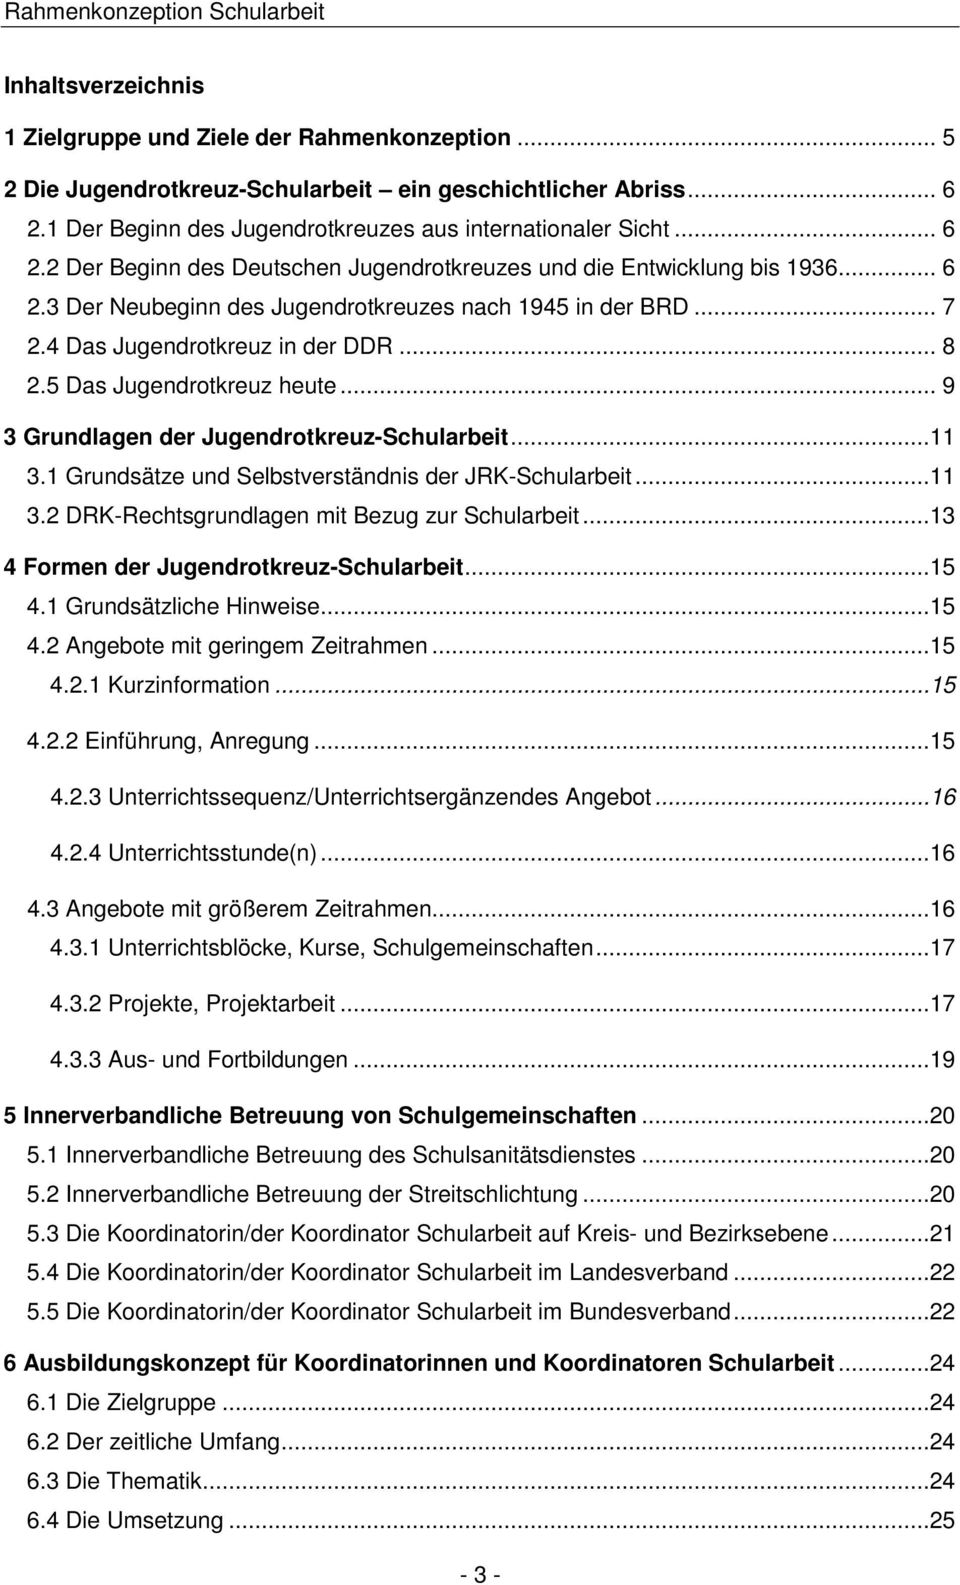 .. 7 2.4 Das Jugendrotkreuz in der DDR... 8 2.5 Das Jugendrotkreuz heute... 9 3 Grundlagen der Jugendrotkreuz-Schularbeit...11 3.1 Grundsätze und Selbstverständnis der JRK-Schularbeit...11 3.2 DRK-Rechtsgrundlagen mit Bezug zur Schularbeit.